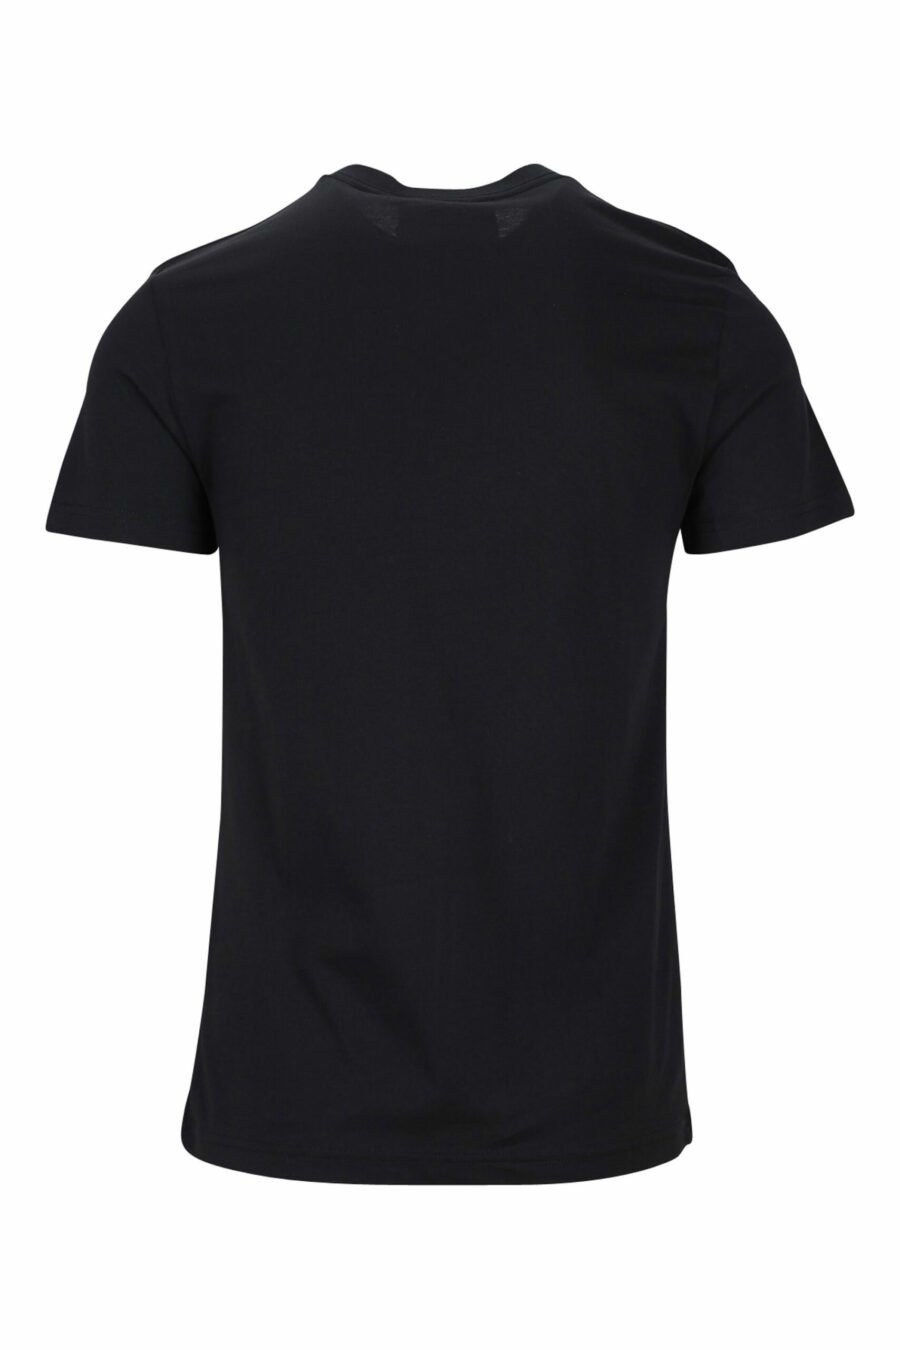 T-shirt preta com minilogo dourado "piece number" - 8052019456875 1 scaled